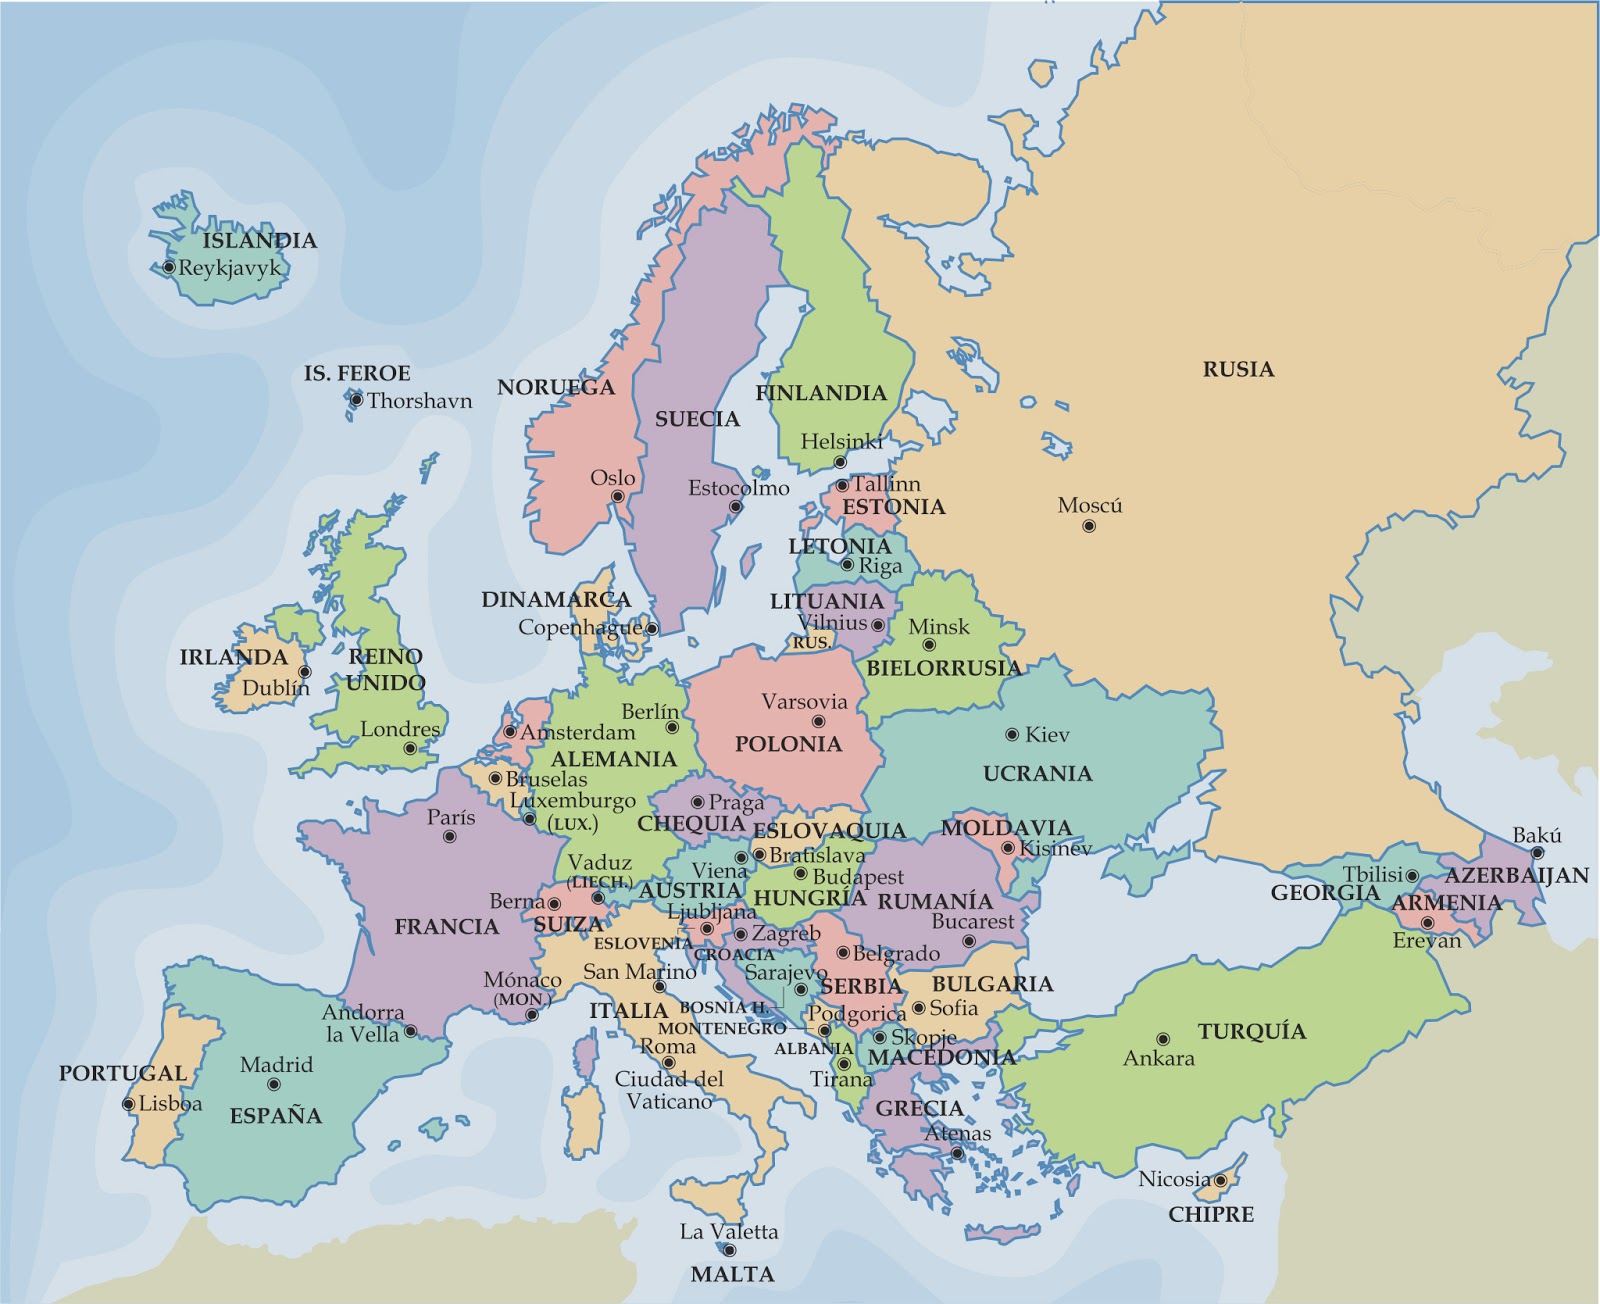 Mappa politica online dell'Europa 1